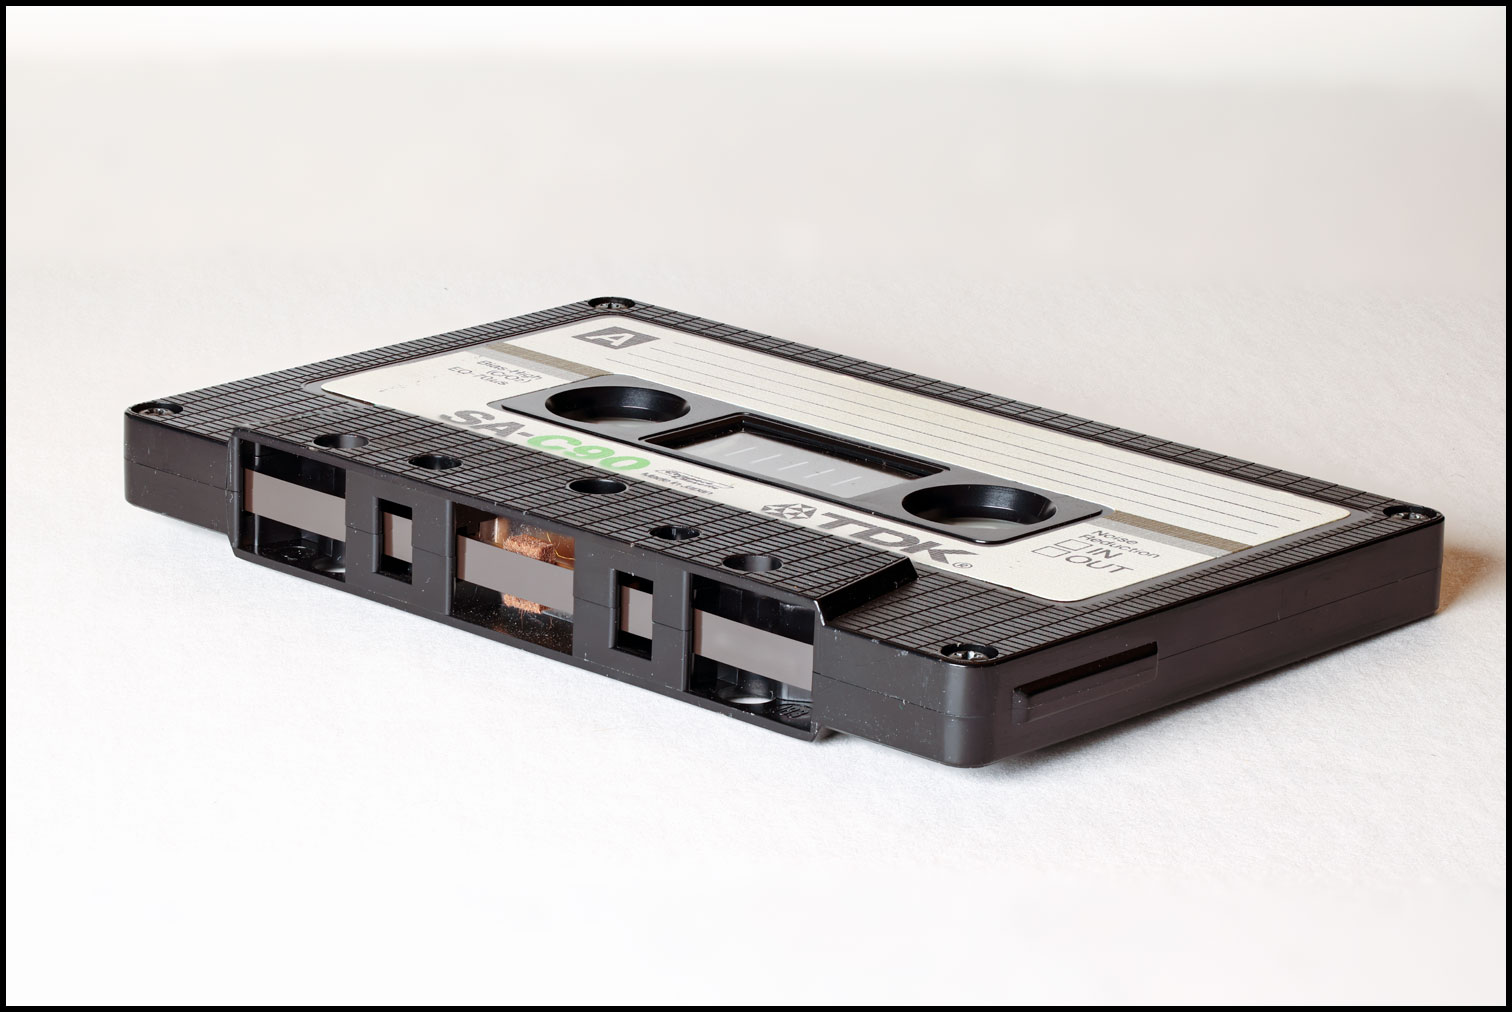 Compact Cassette